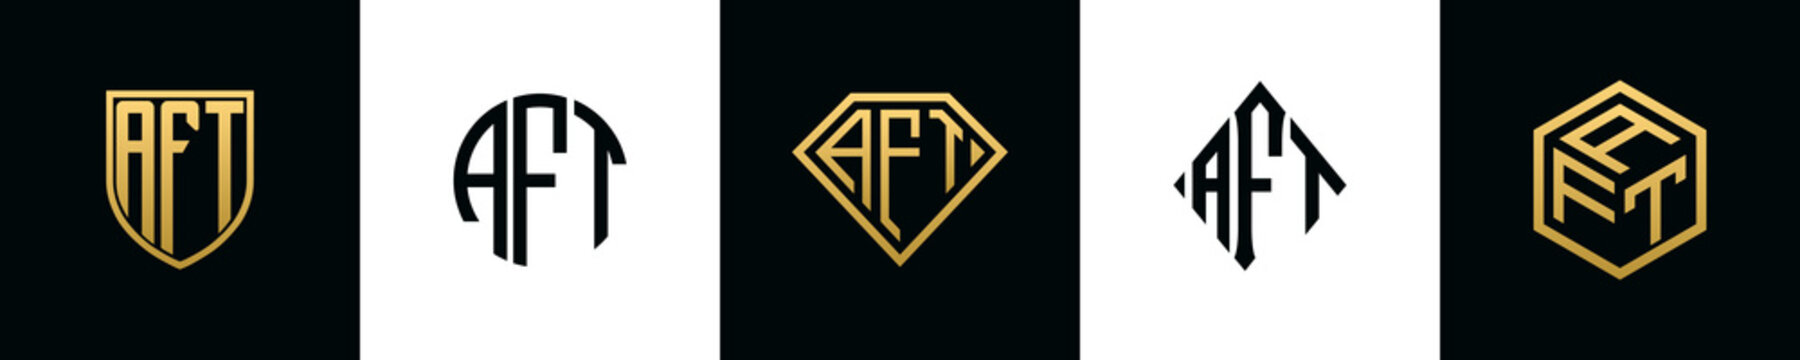 Initial letters AFT logo designs Bundle